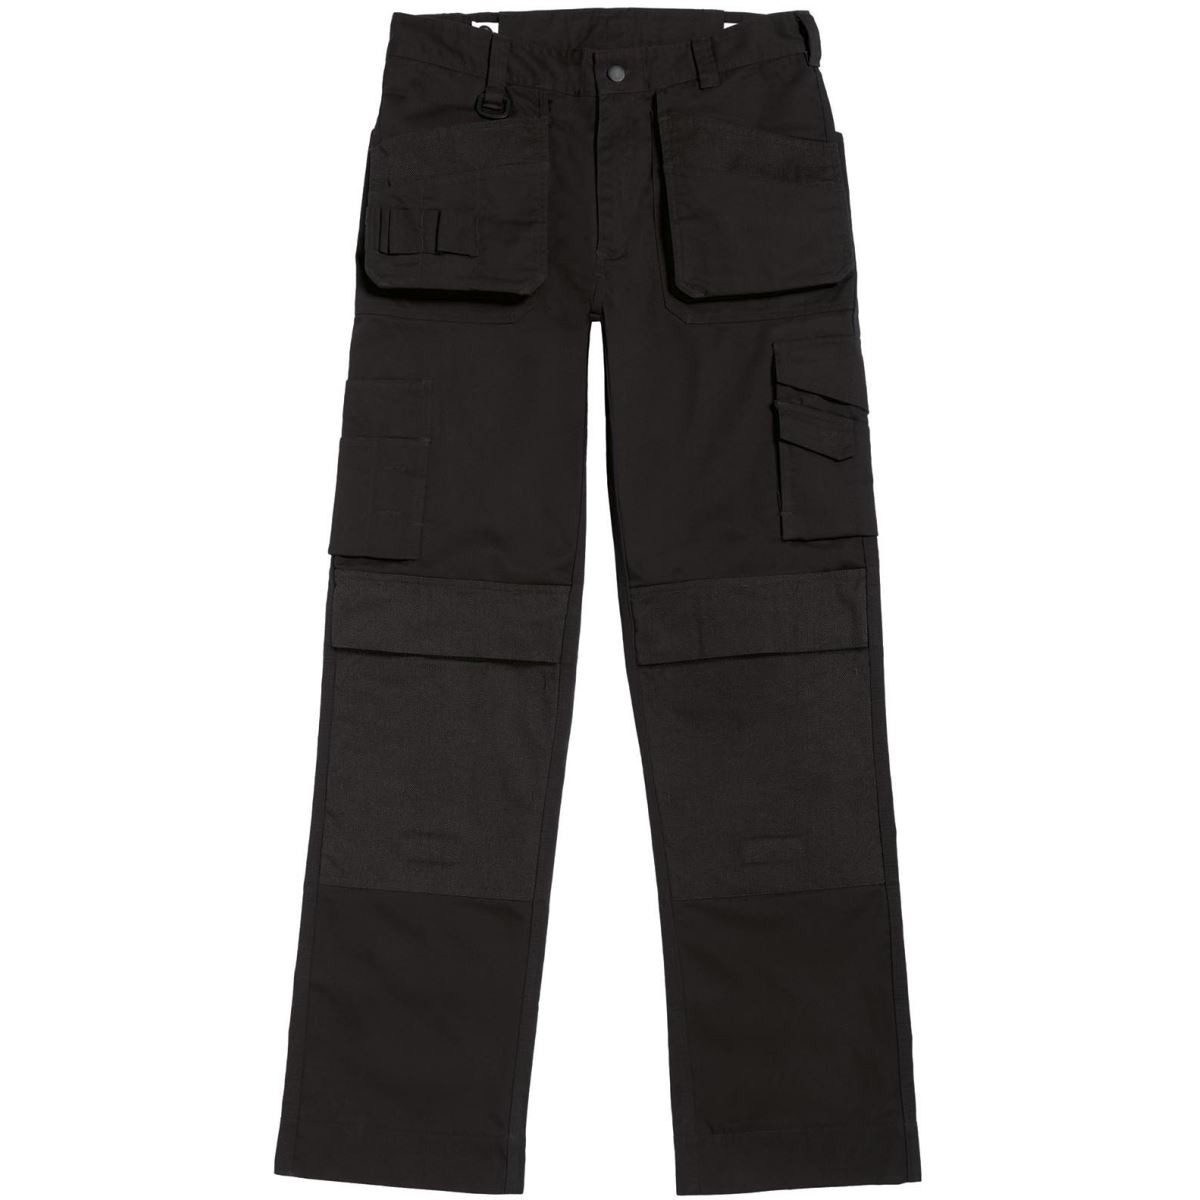 Pánské pracovní kalhoty B&C Performance Pro s multi-kapsami - černé, 52